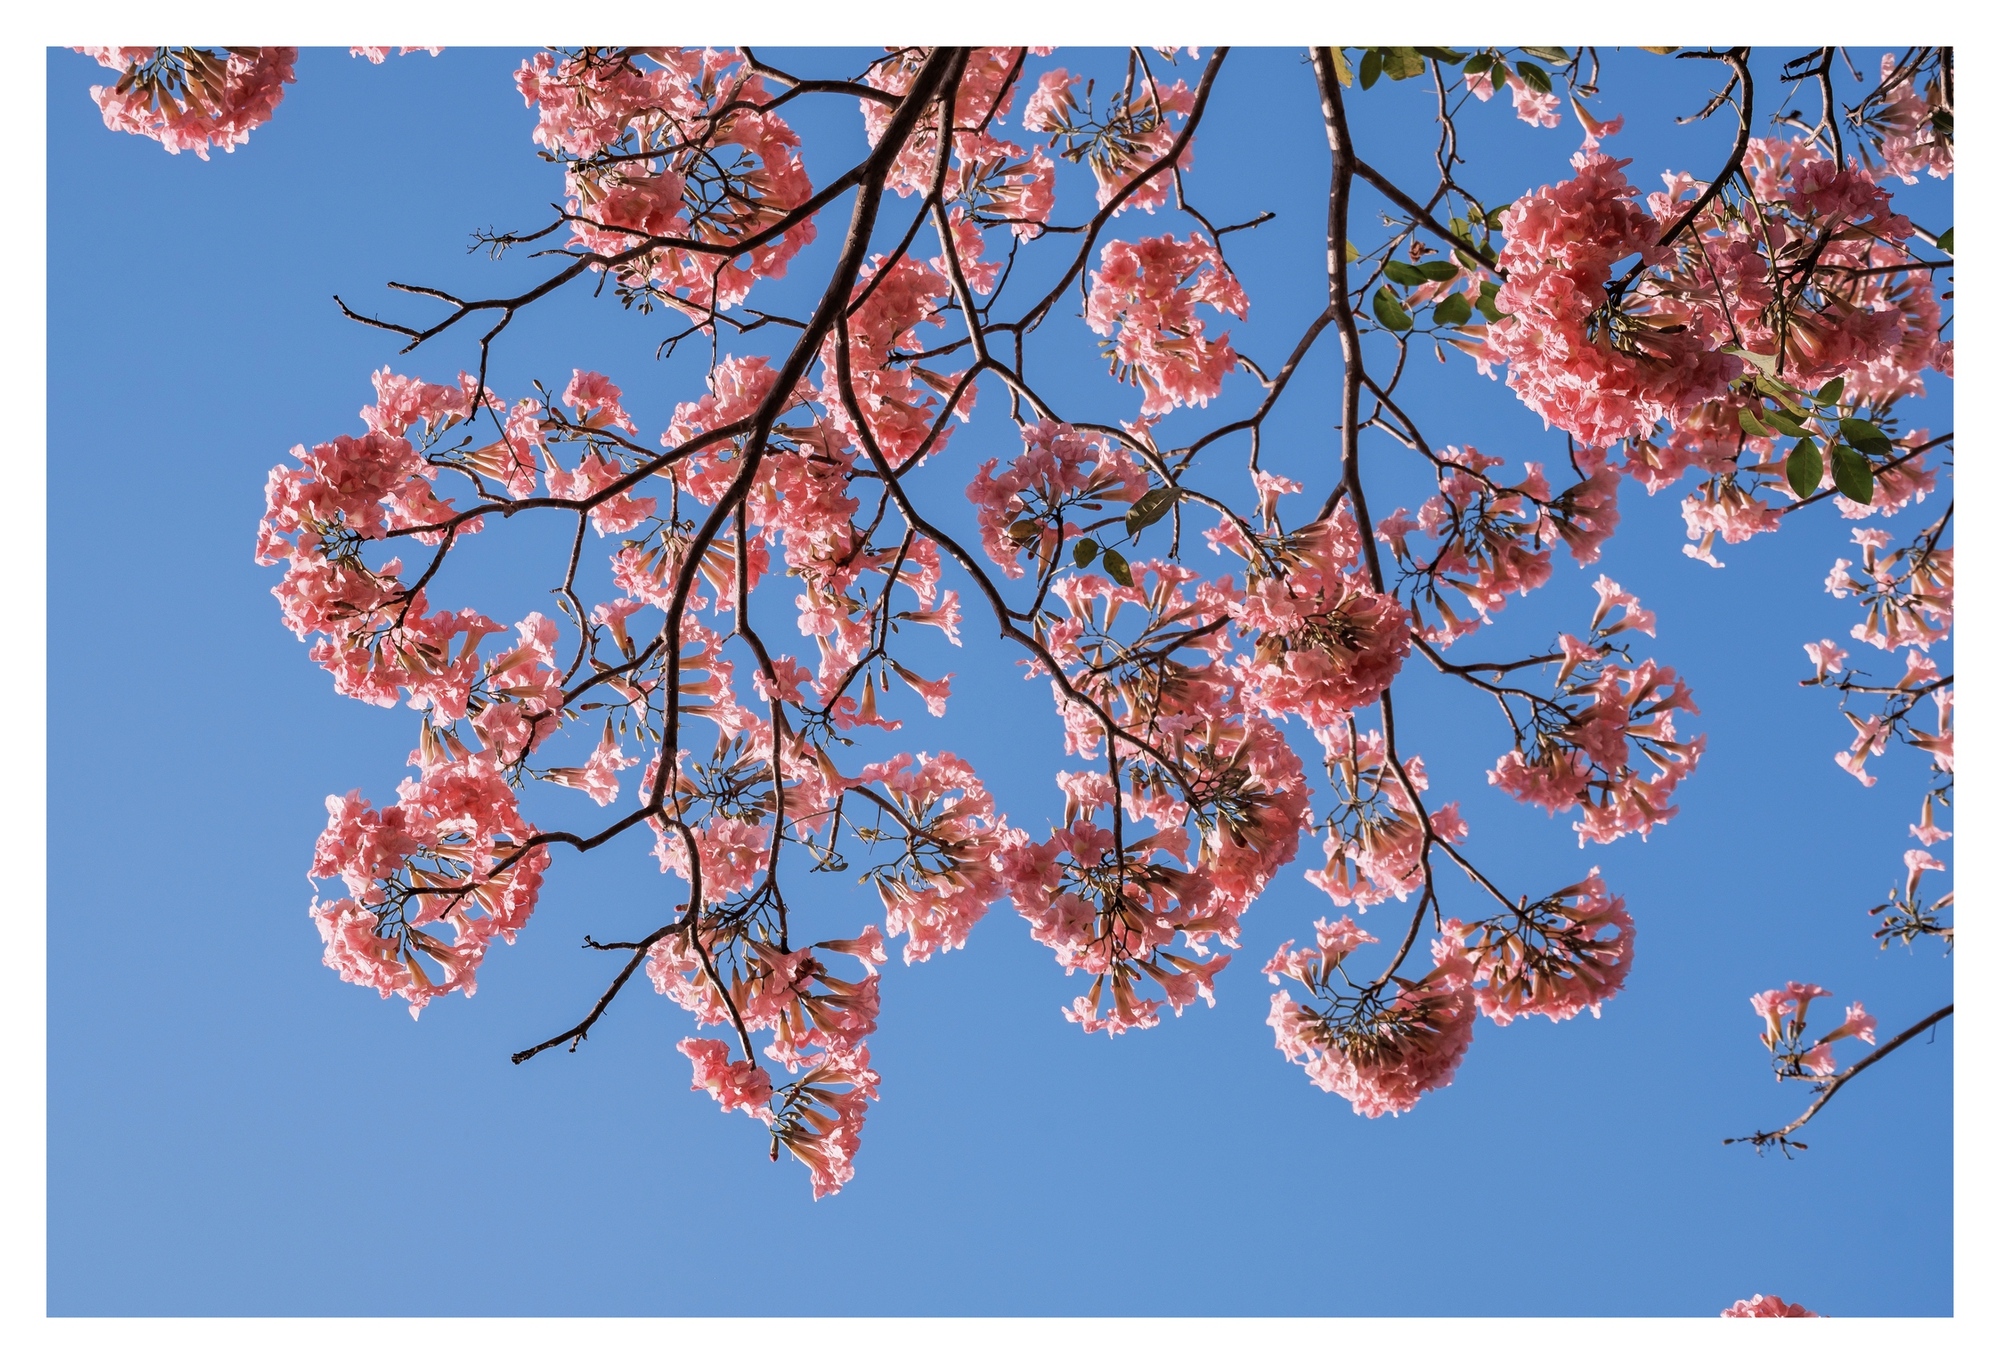 Mùa kèn hồng rợp trời Sài Gòn, chợt thấy thành phố mộng mơ biết bao giữa sắc hoa rực rỡ- Ảnh 11.